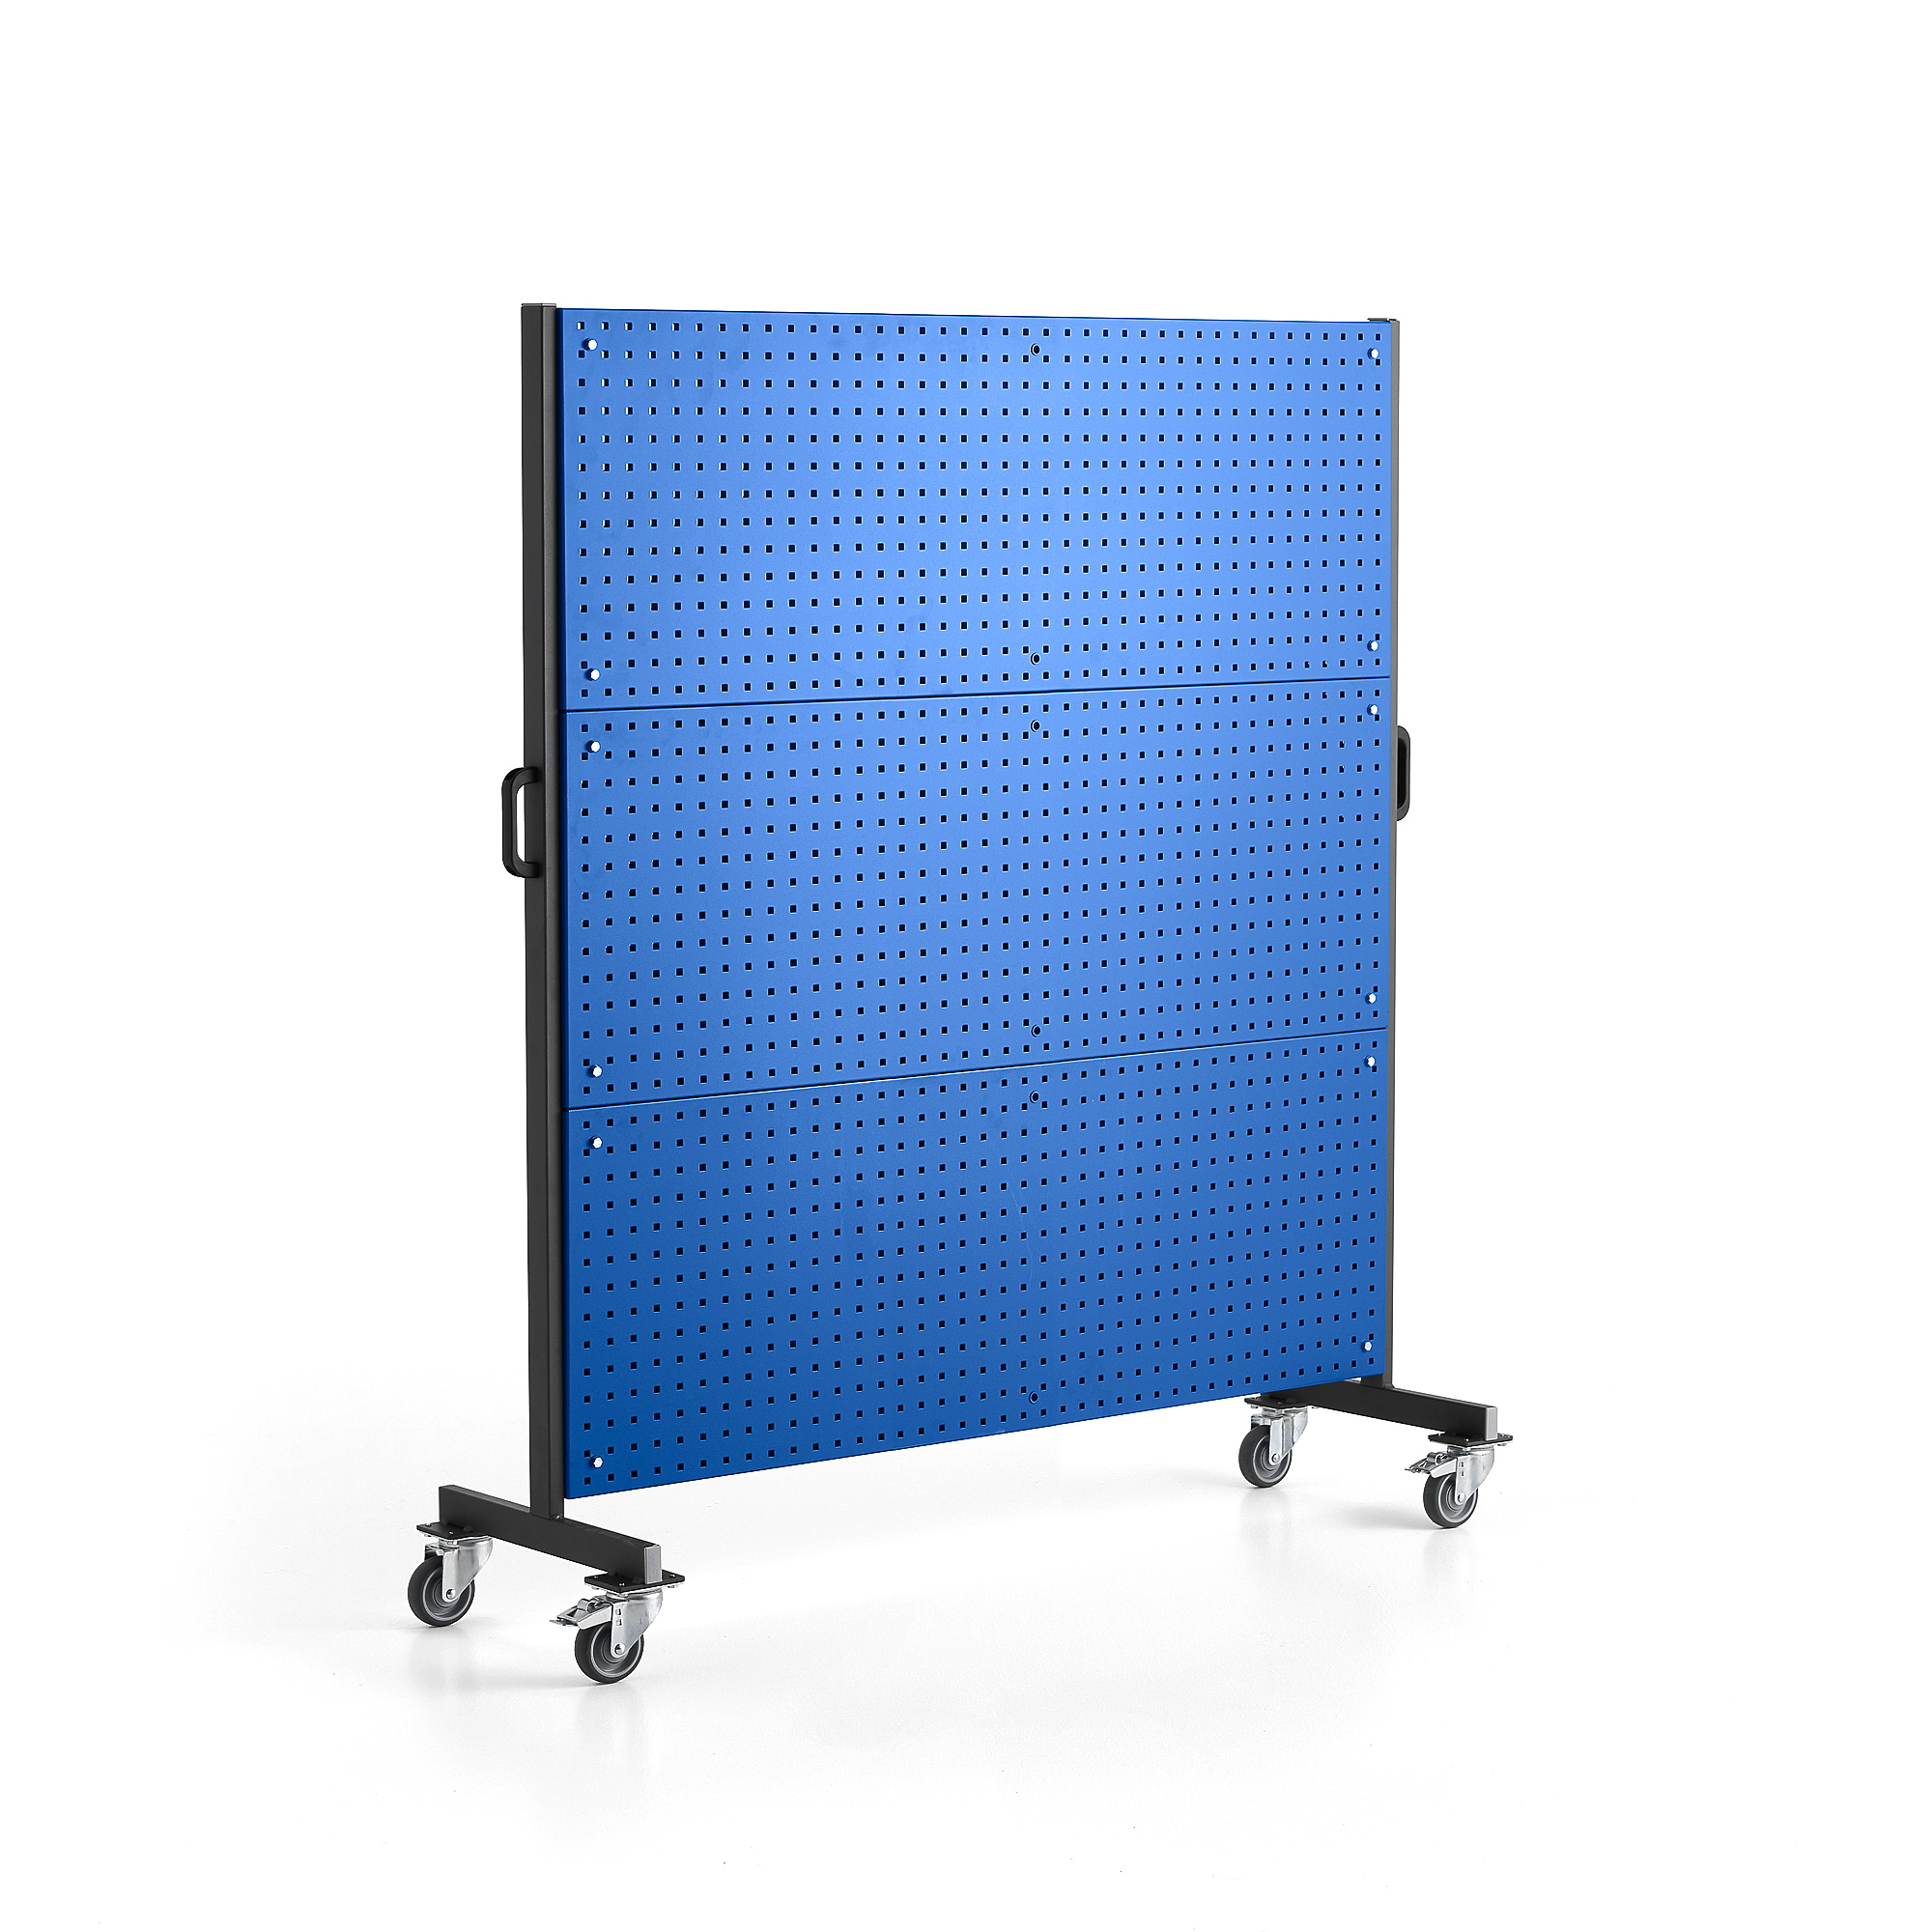 Mobilní panel na nářadí SELECT, 1560x1830 mm, modrý